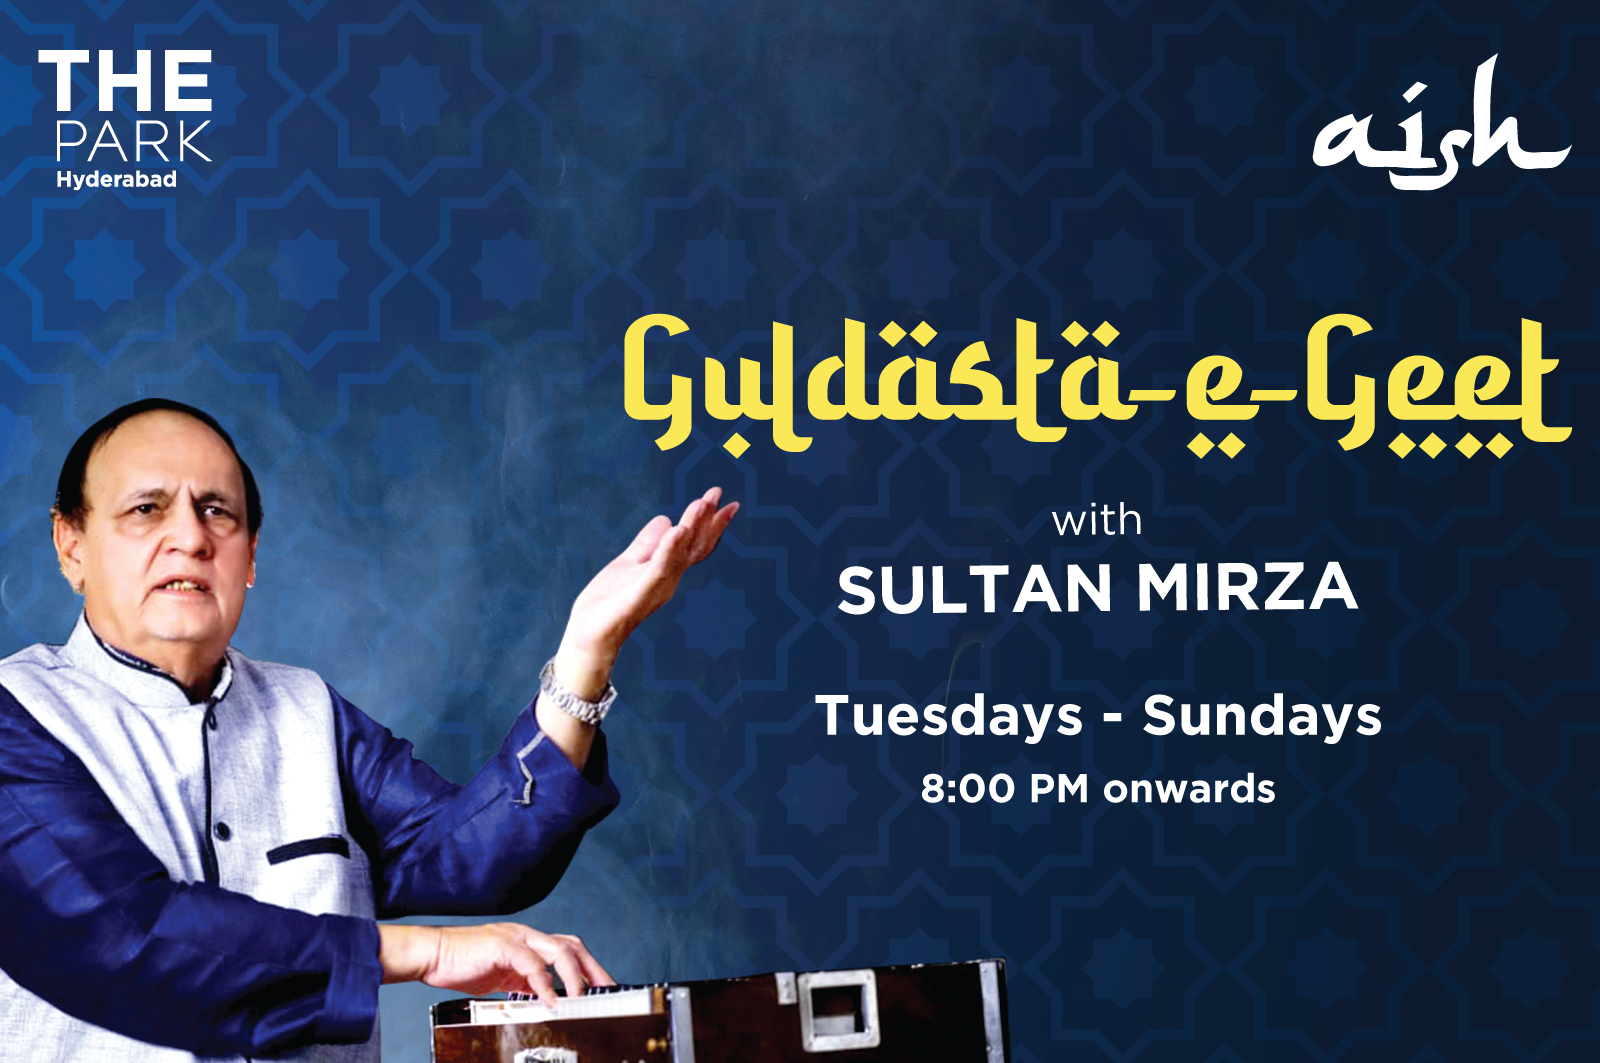 Guldasta-e-Geet with Sultan Mirza